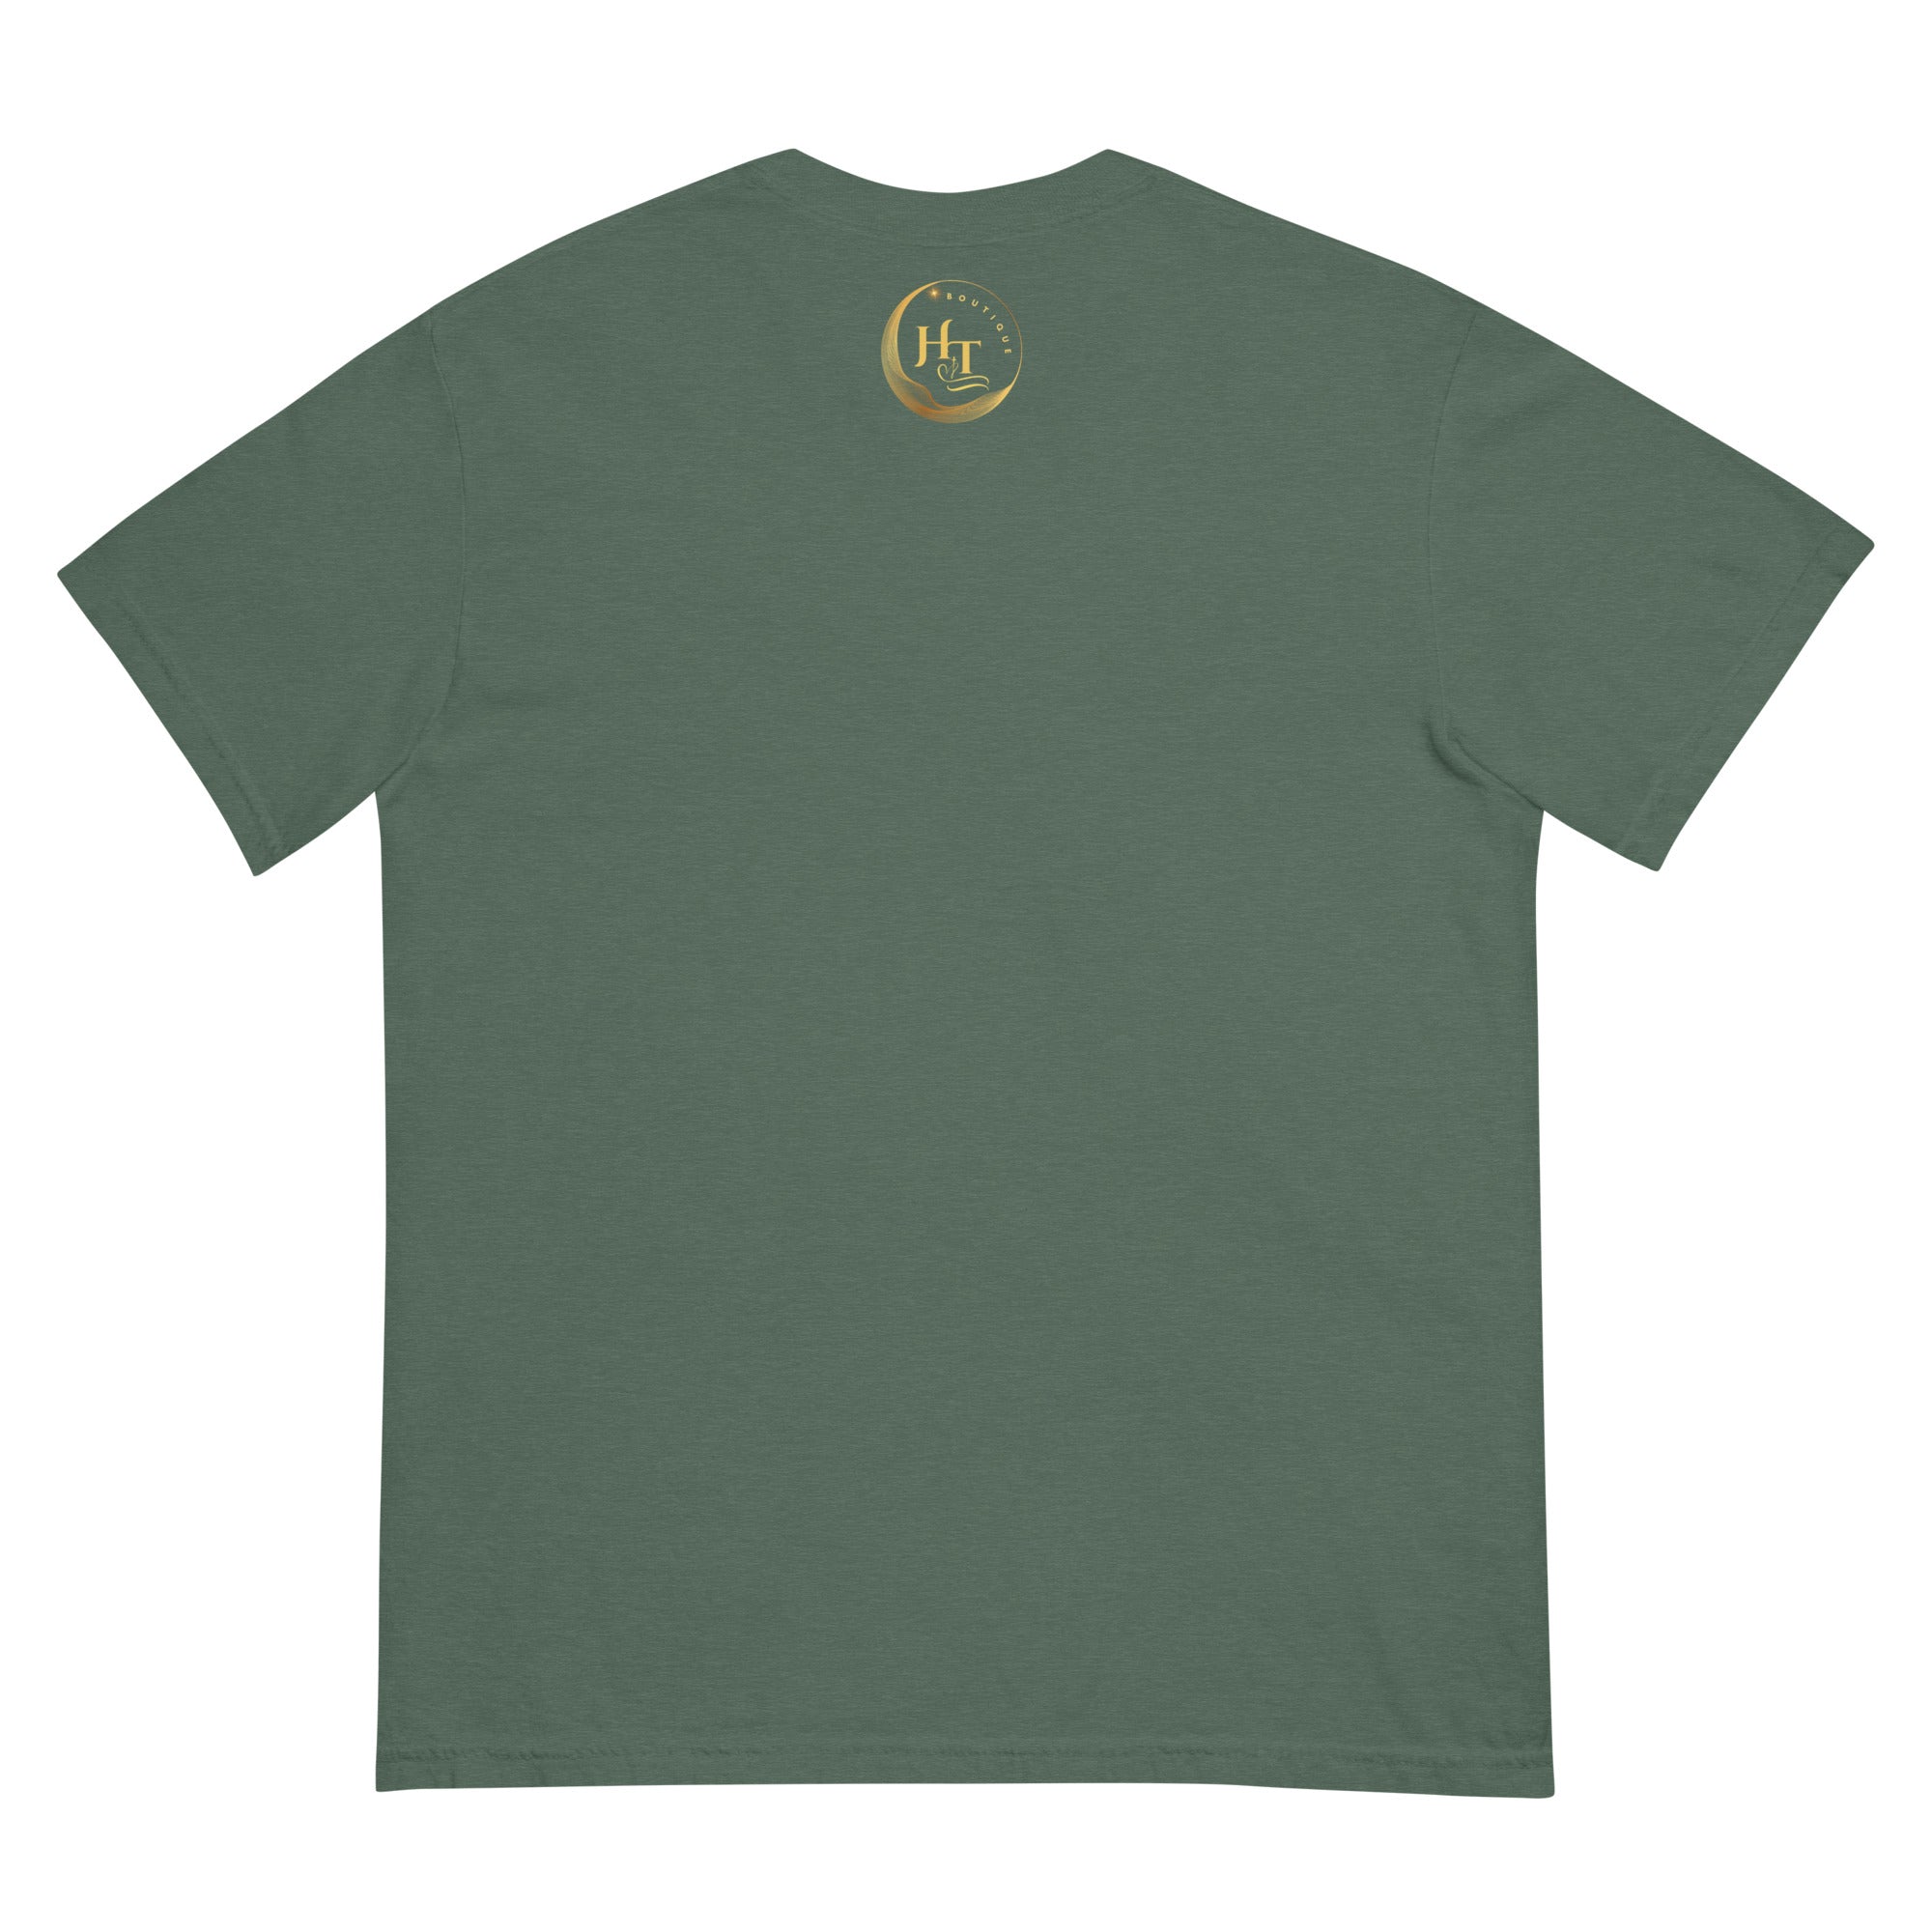 Cancer Unisex garment-dyed heavyweight t-shirt